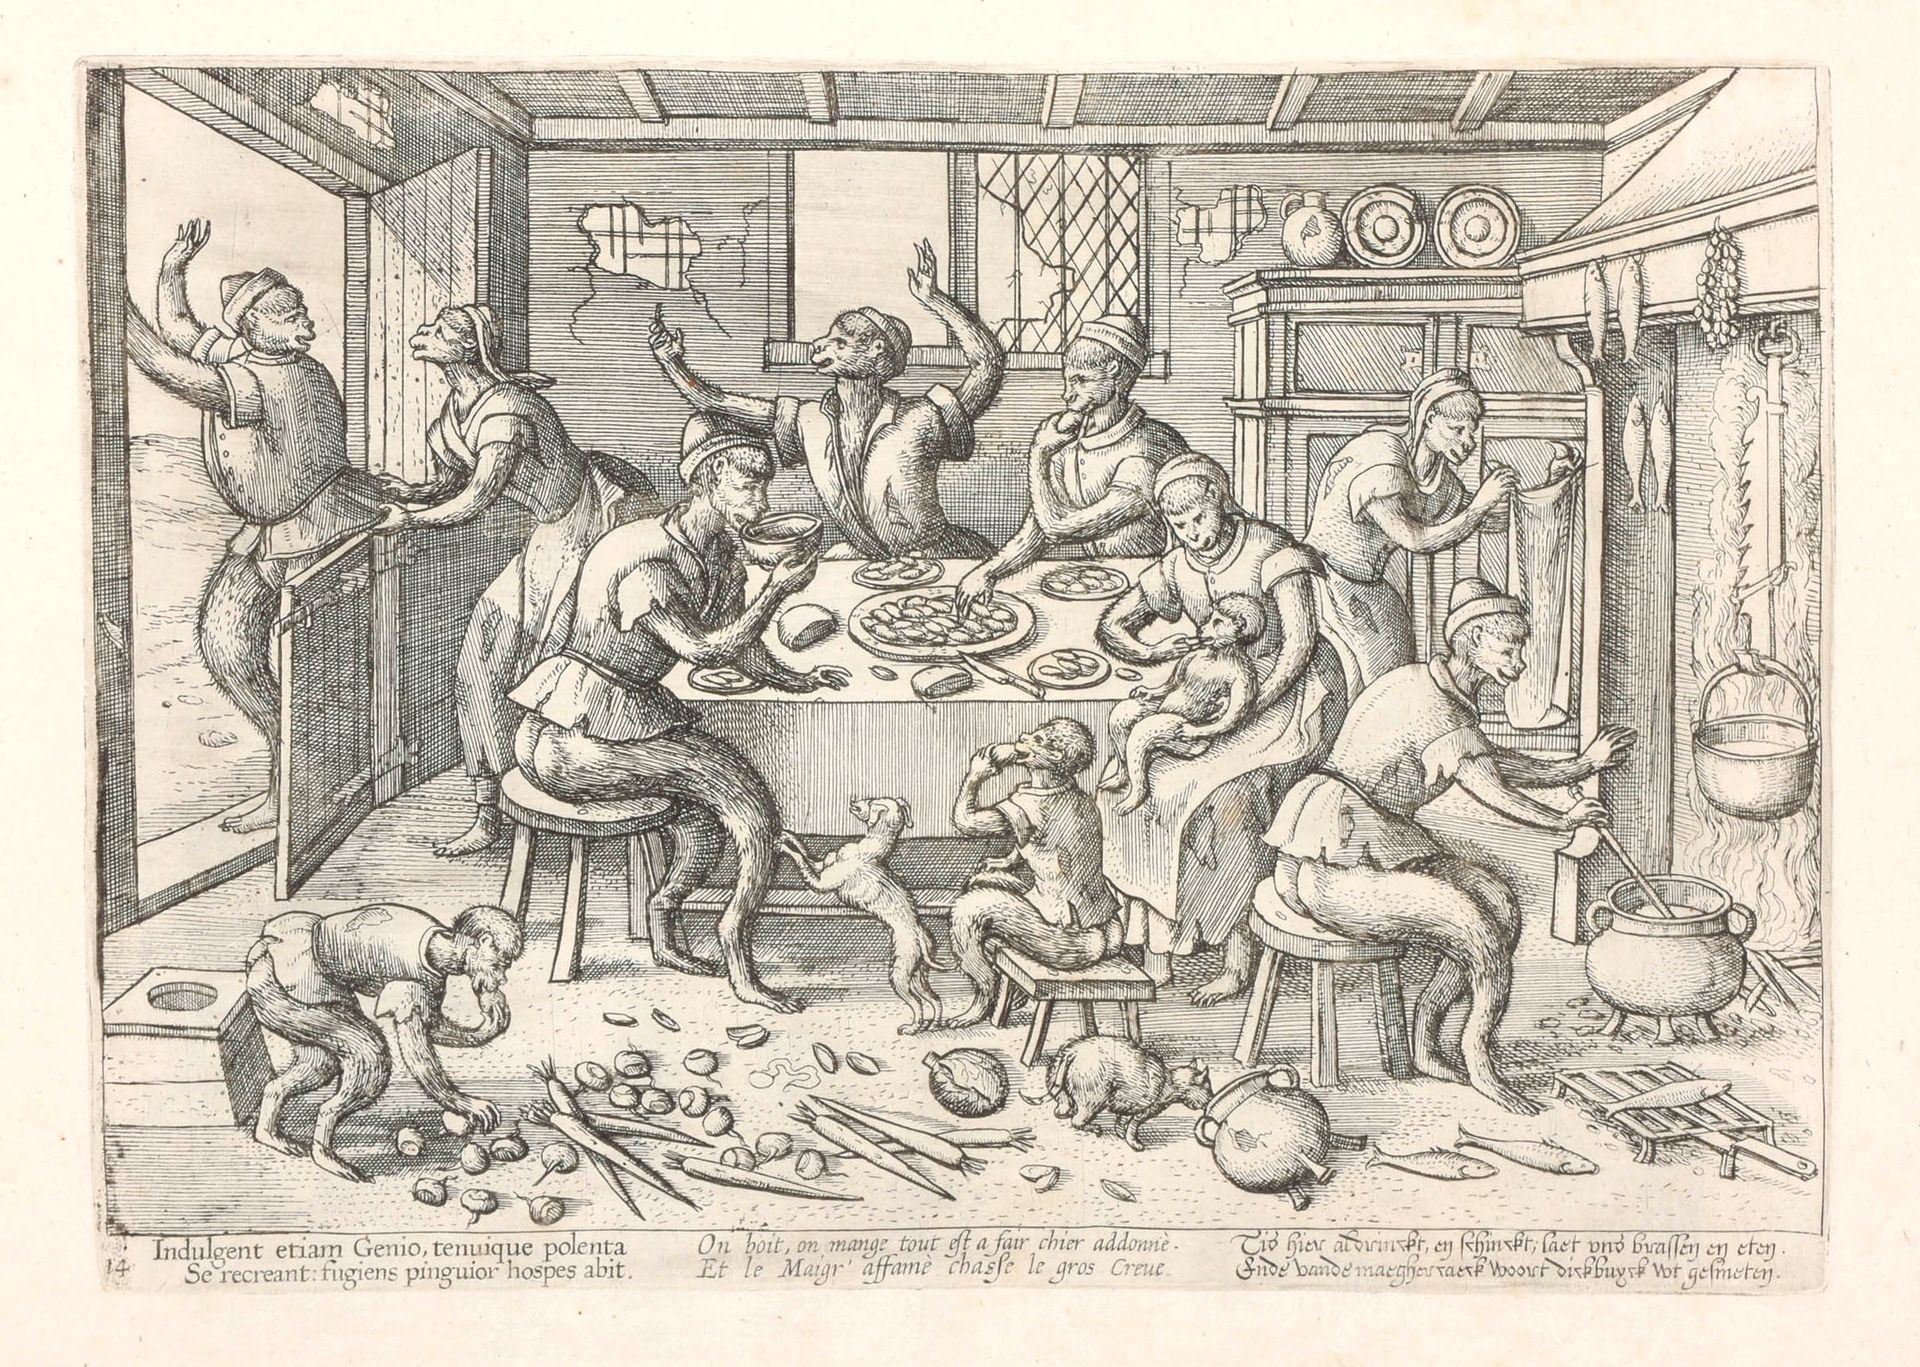 VAN DER BORCHT, Pieter (1545-1608) 
[Monkeys: 16 Bilder nach Pieter Bruegel]



&hellip;